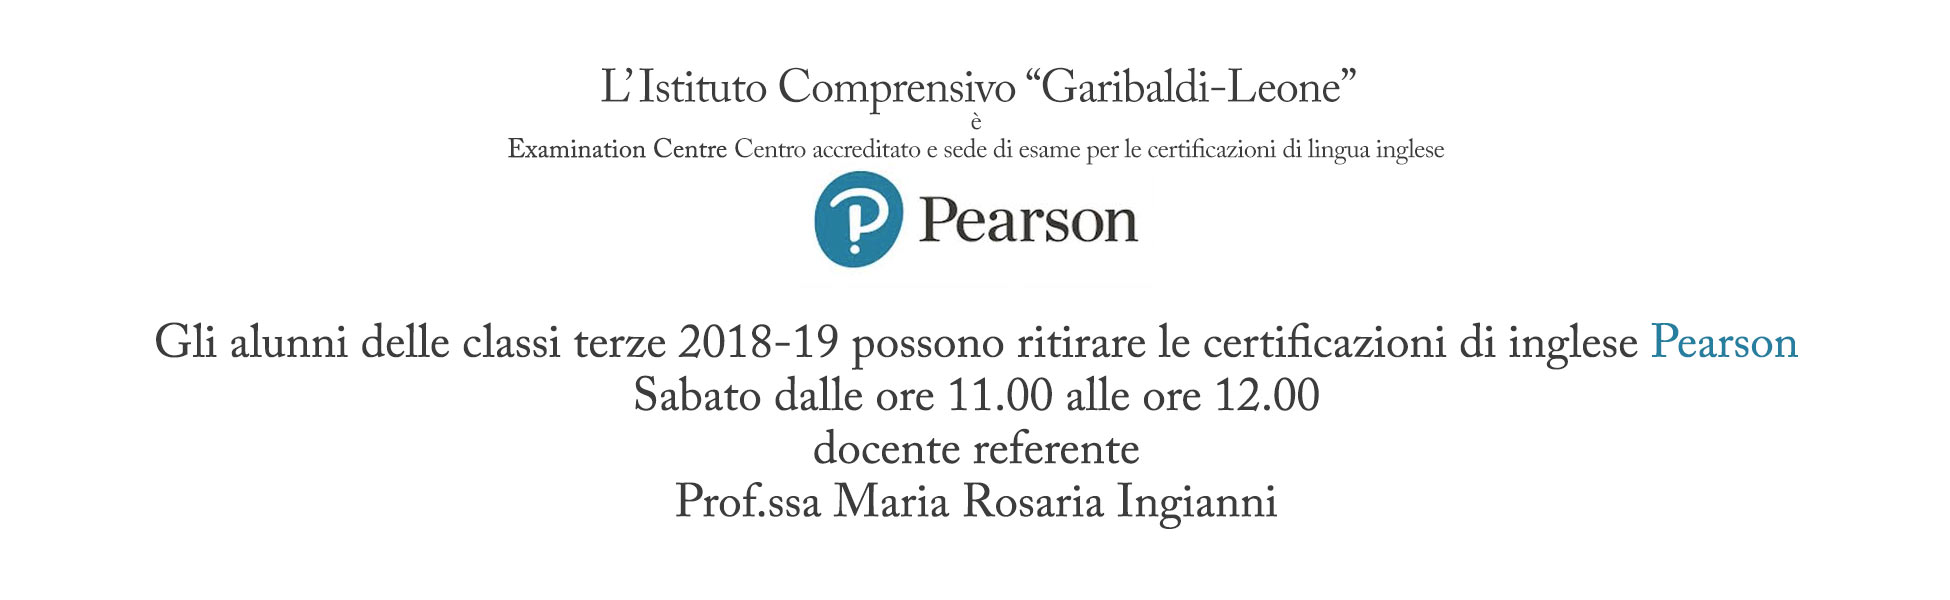 Gli alunni delle classi terze 2018-19 possono ritirare le certificazioni di inglese Pearson Sabato dalle ore 11.00 alle ore 12.00 docente referente Prof.ssa Maria Rosaria Ingianni